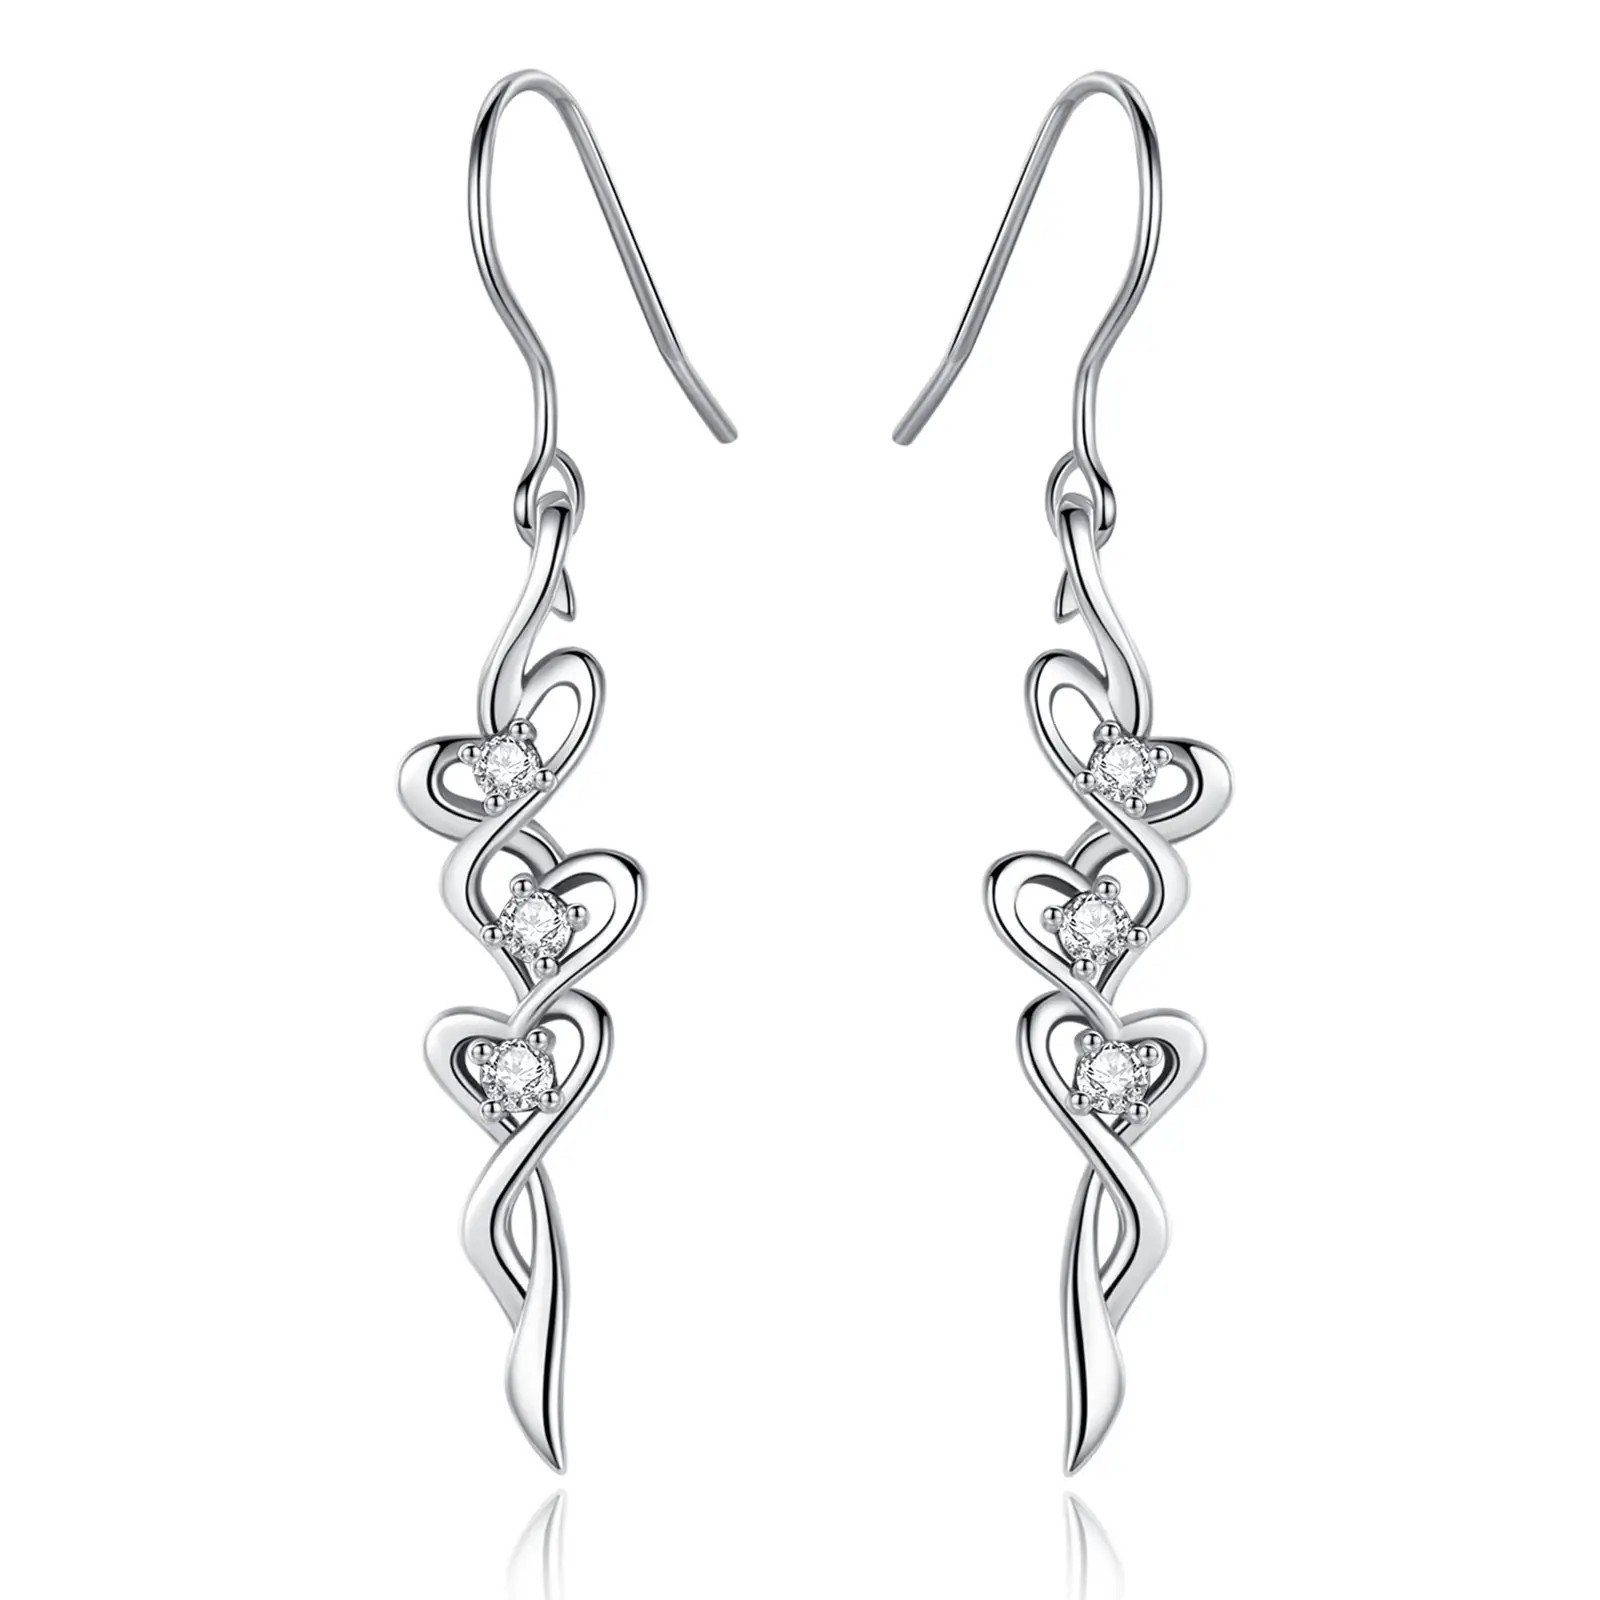 Changda 925 sterling silver cubic zirconia cute love heart shaped drop earrings